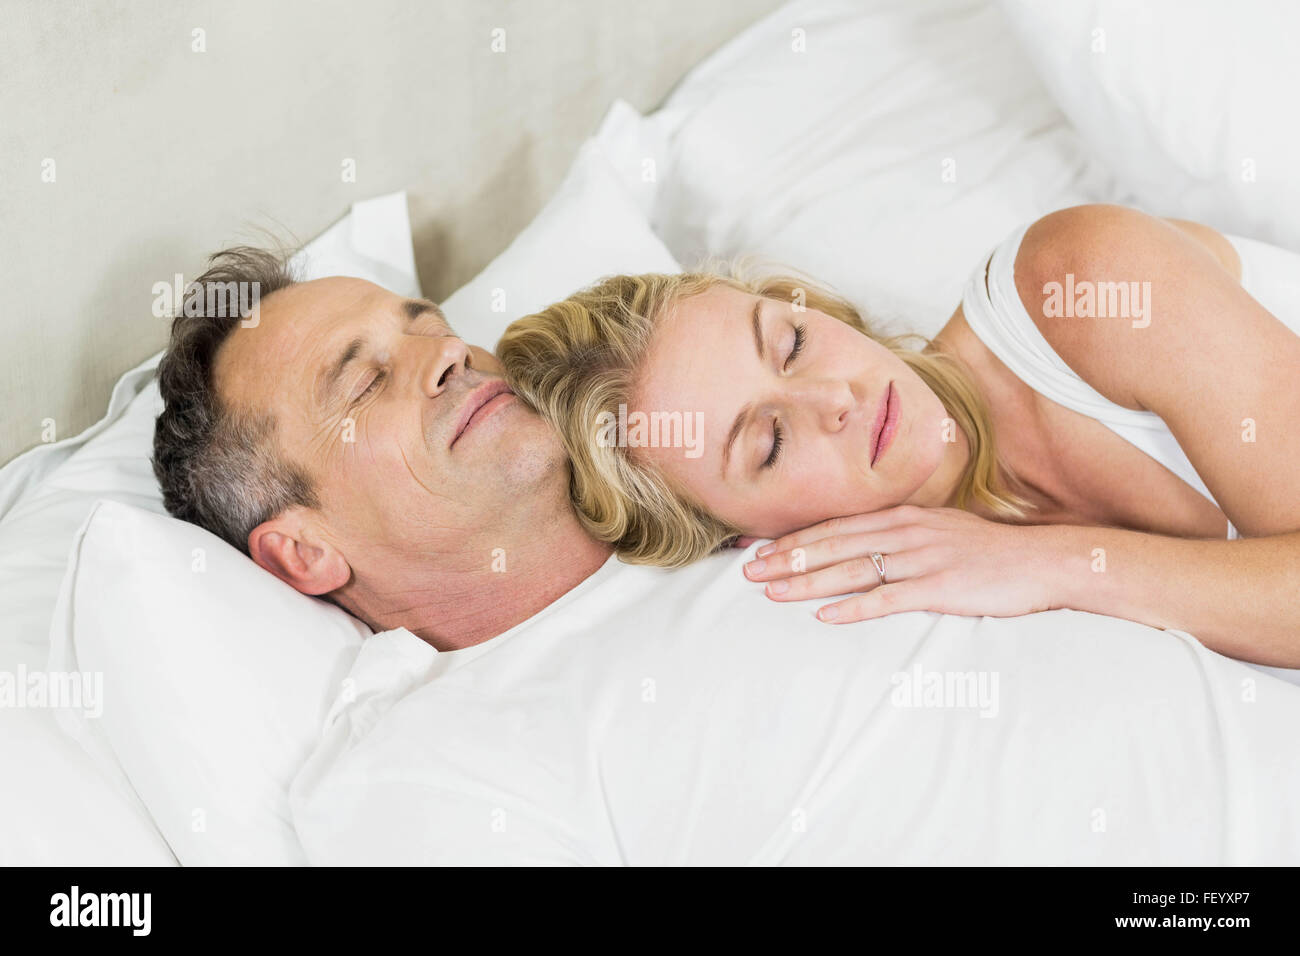 Süßes Paar Kuscheln Im Bett Stockfotografie Alamy 